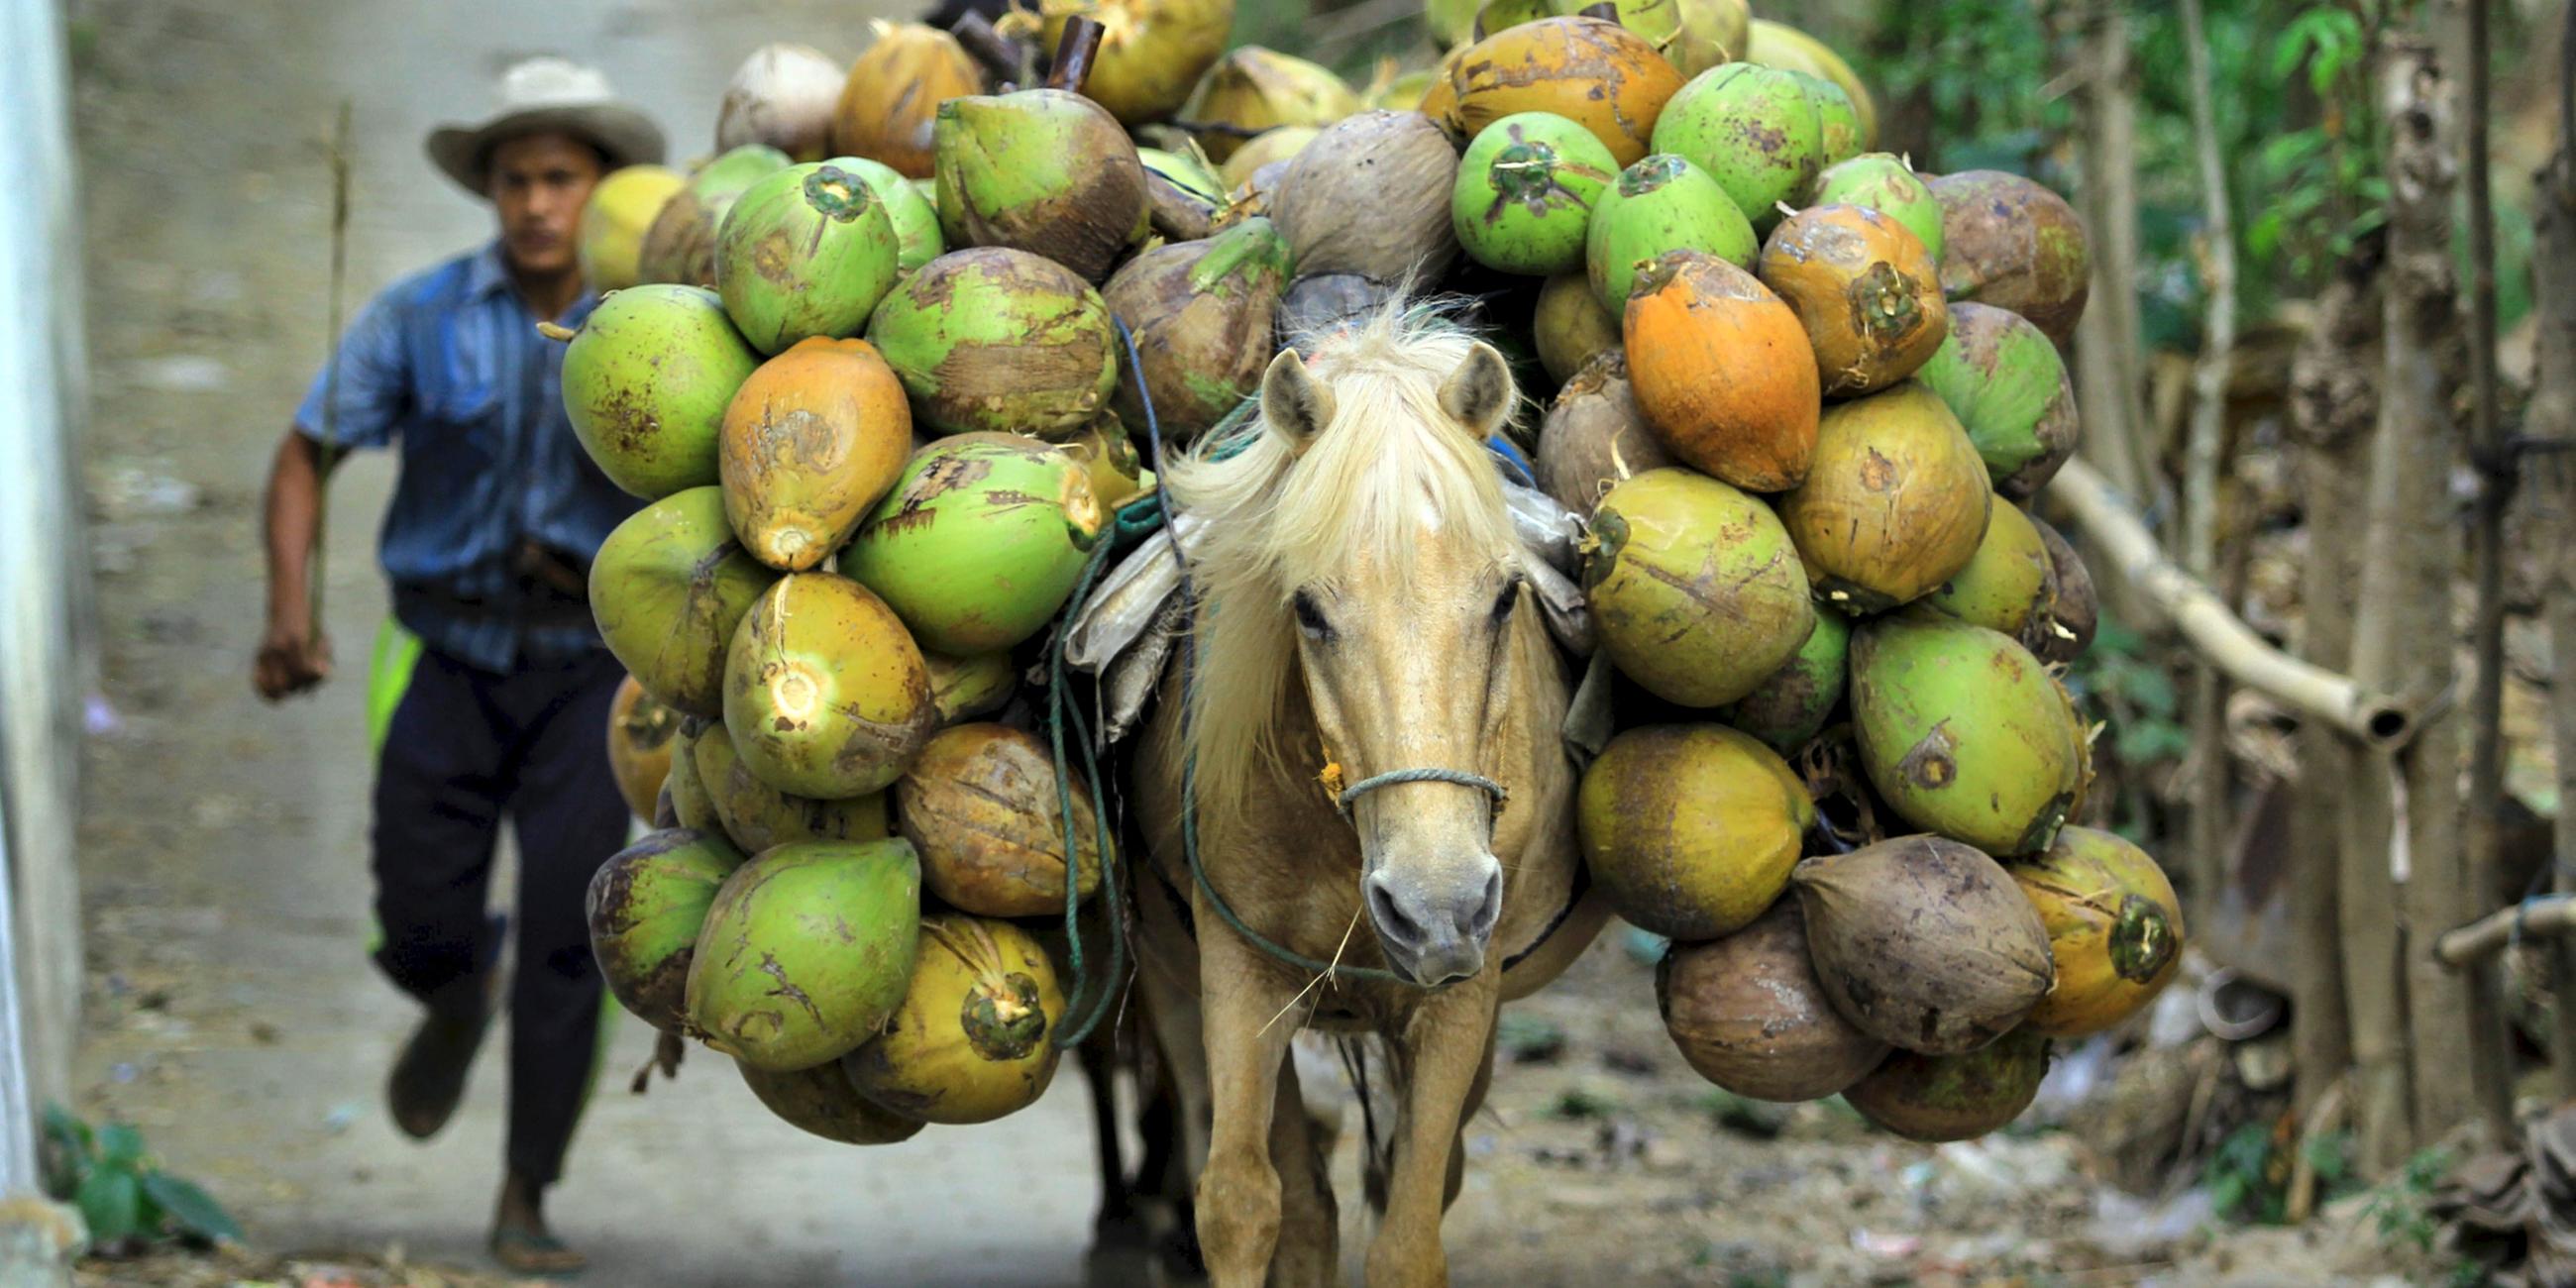 Pferd transportiert frisch geerntete Kokosnüsse, Archivbild